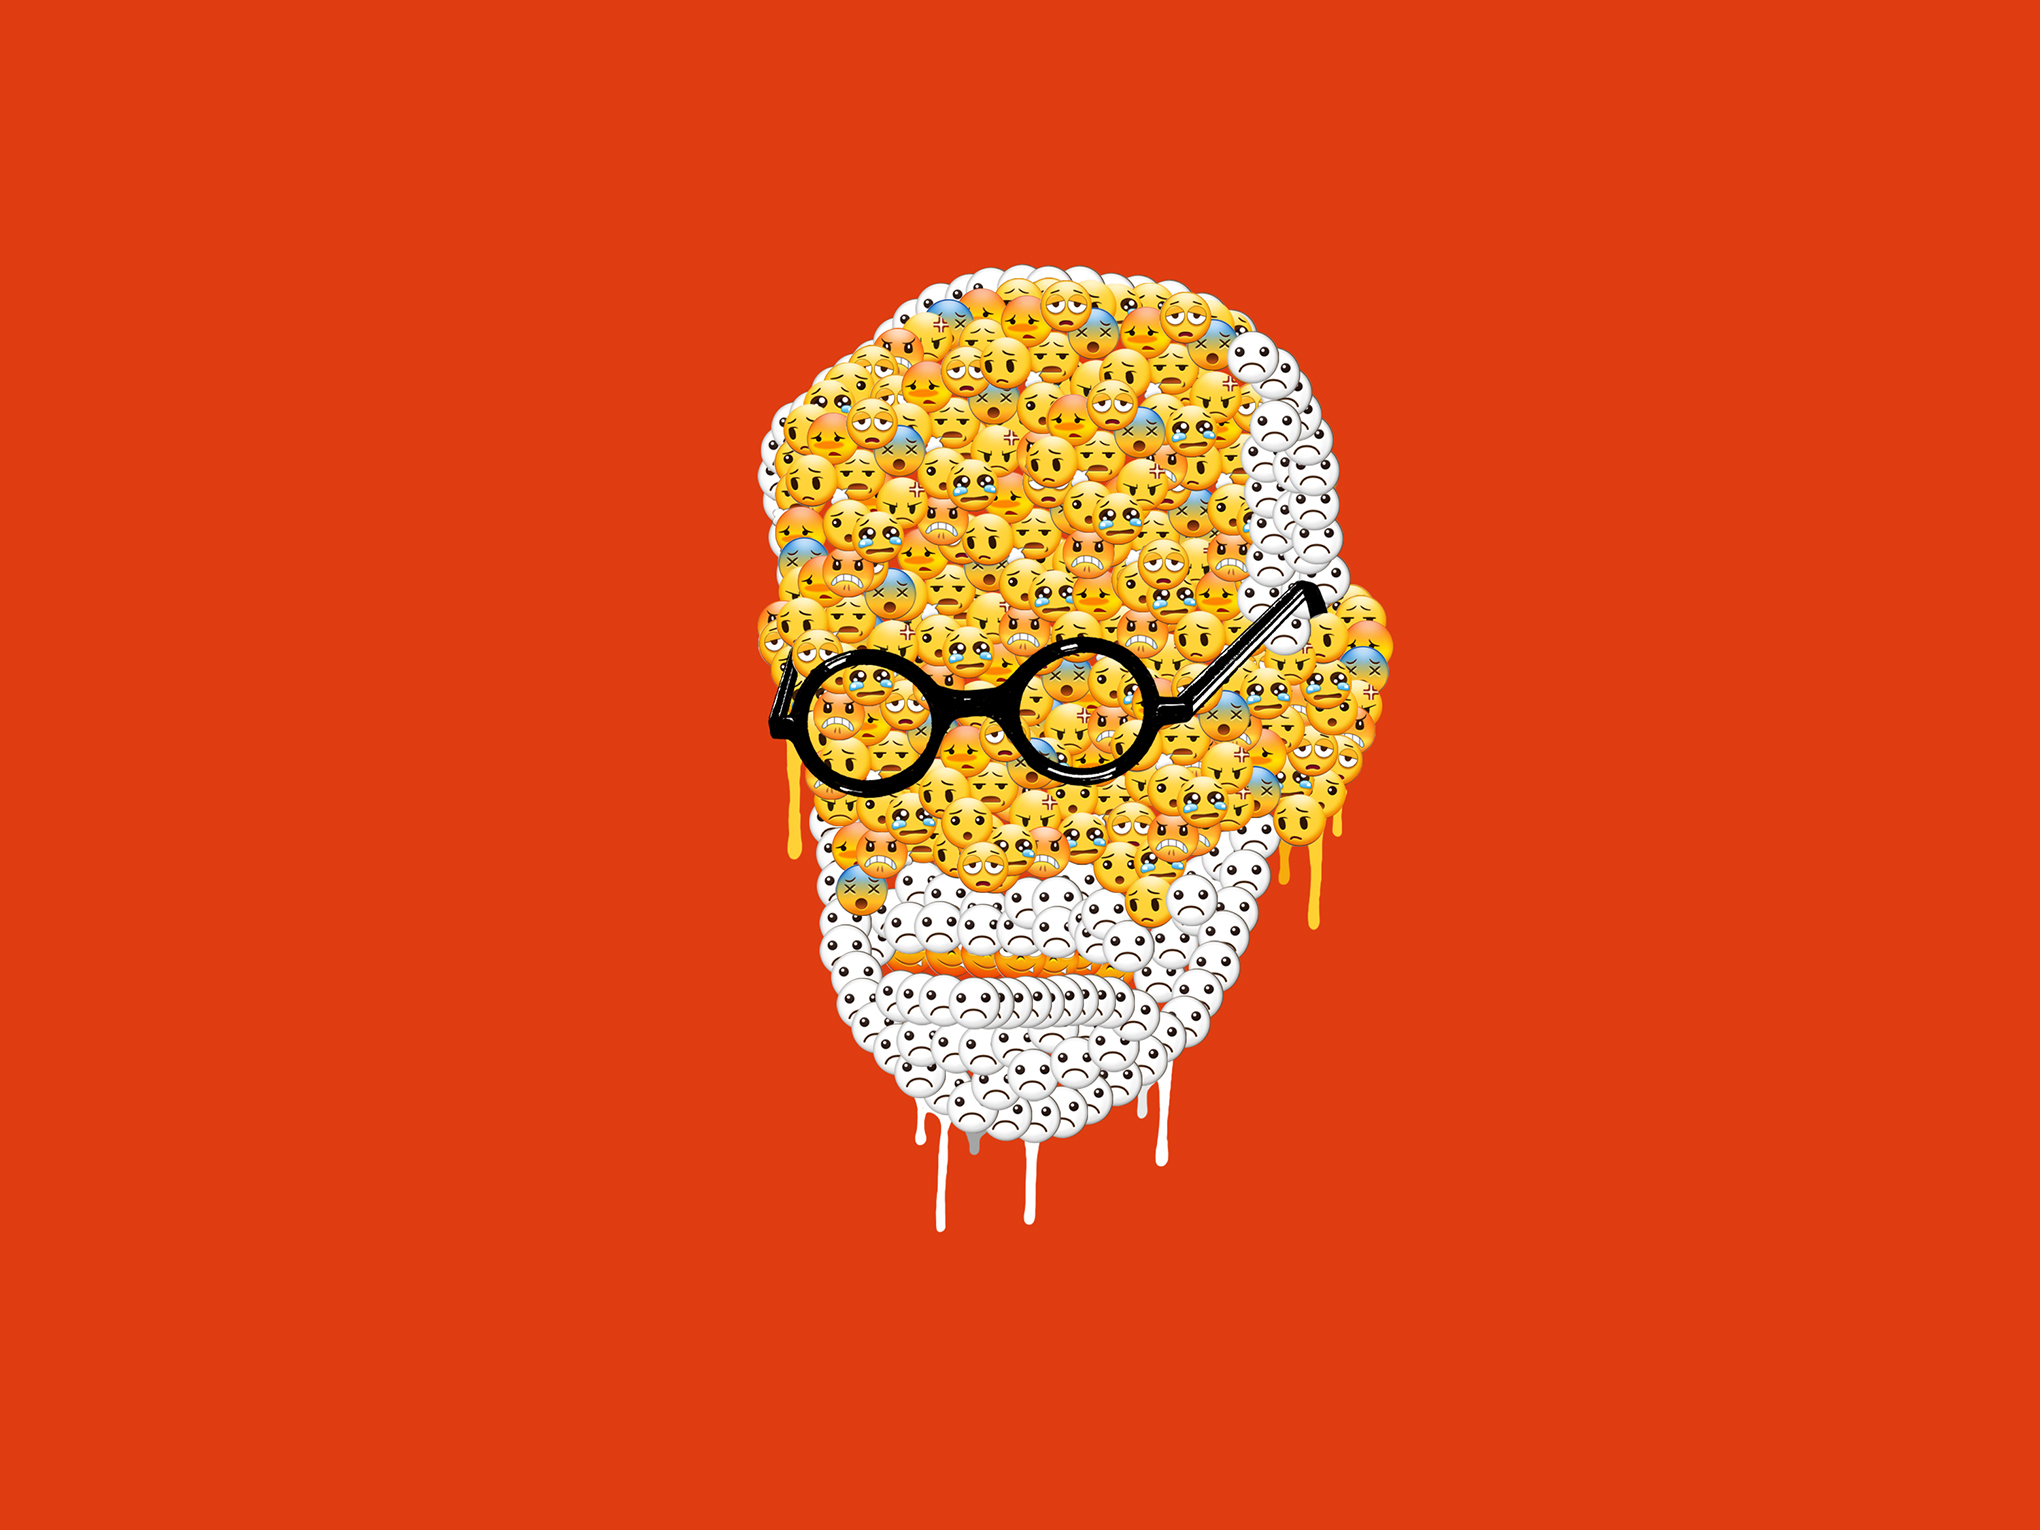 σκίτσο του προσώπου του Sigmund Freud να απαρτίζεται από emoticons